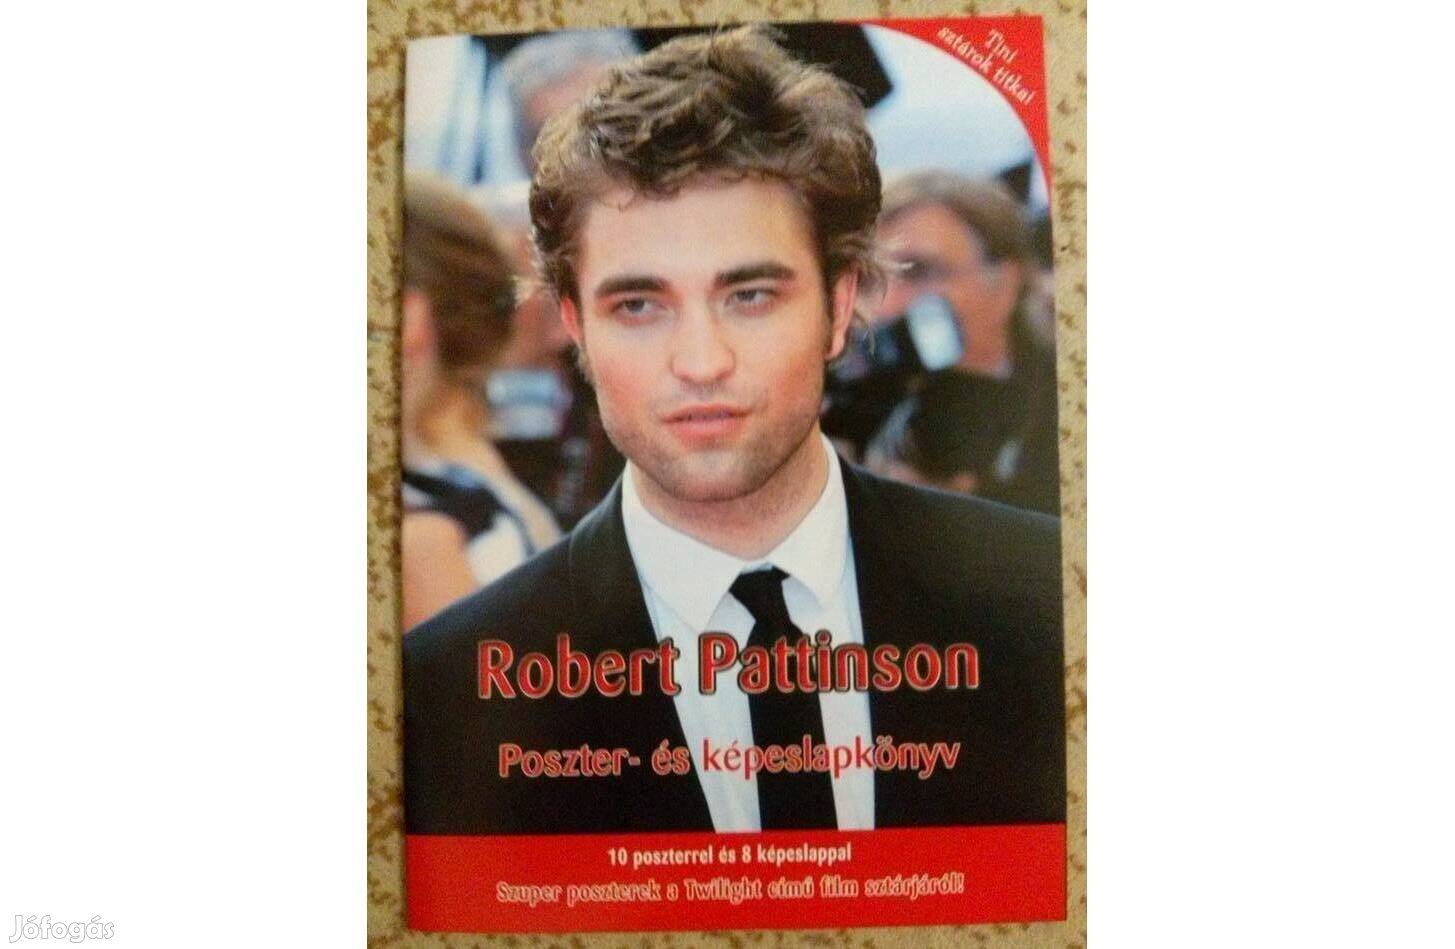 Robert Pattinson Poszter és képeslap könyv eladó!